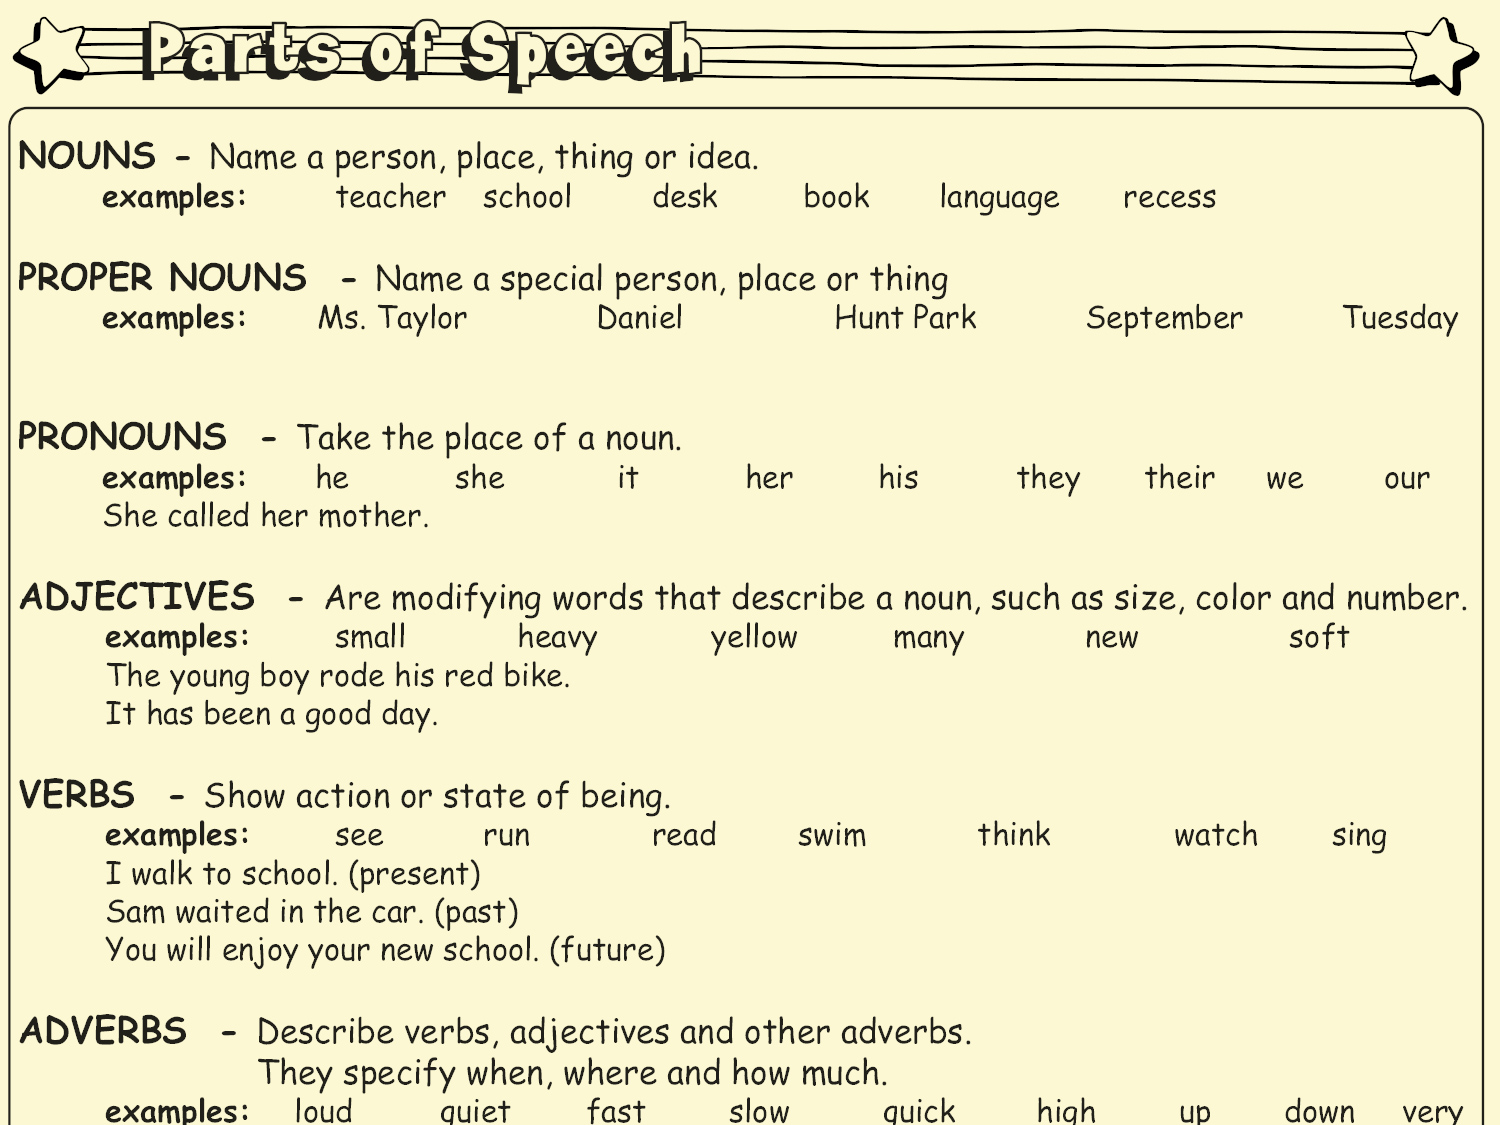 4th grade speech examples